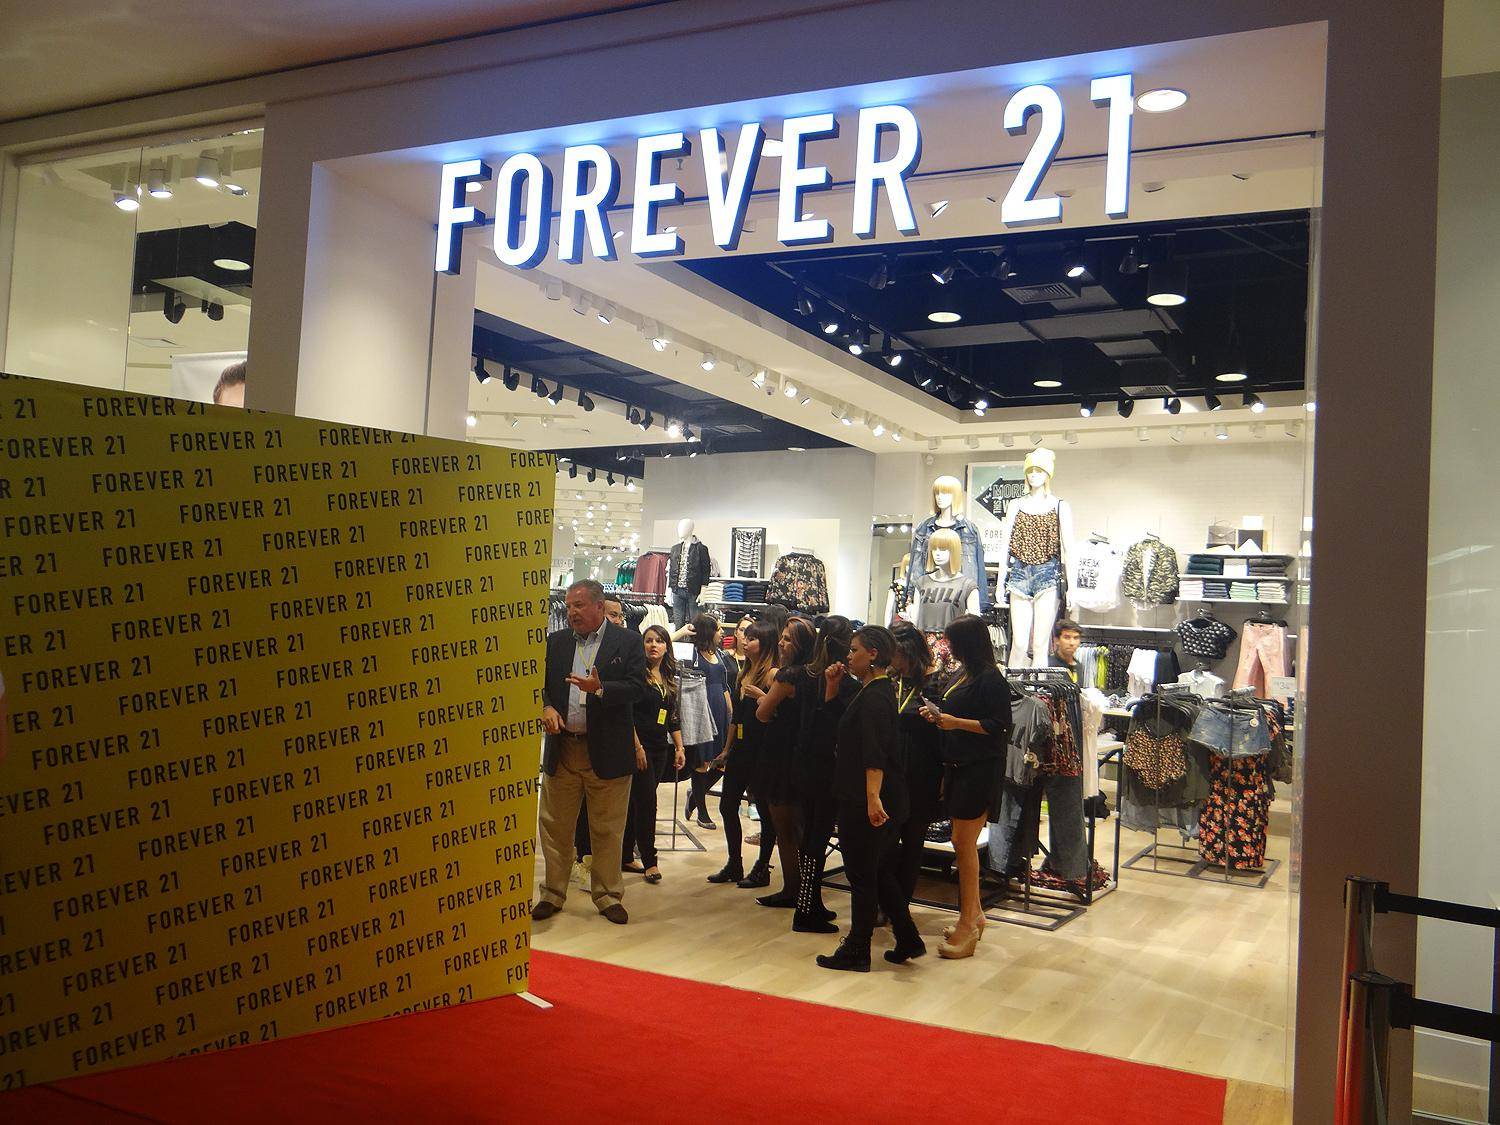 A pré-inauguração da Forever 21 no Brasil